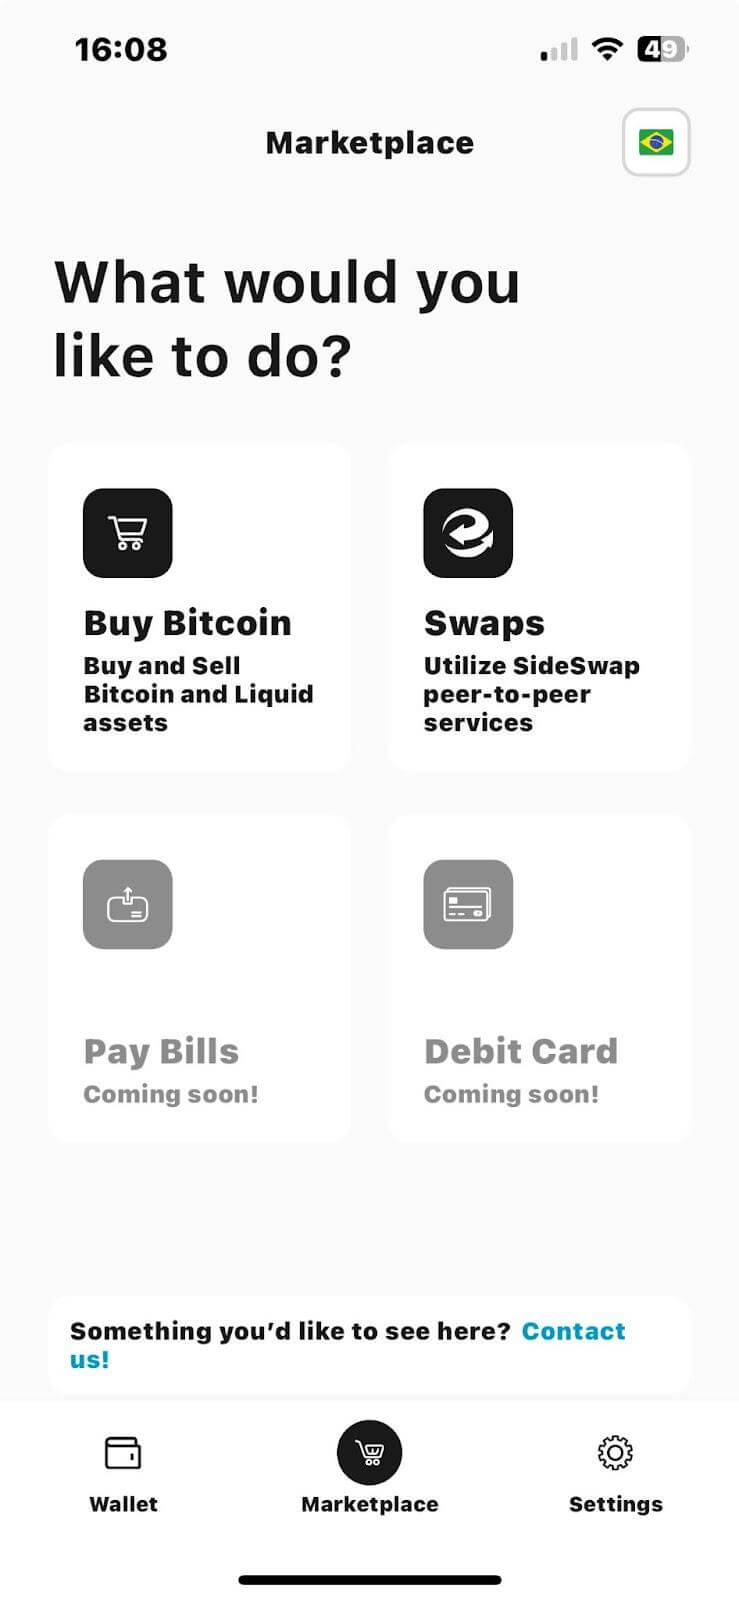 Compre ou vende Bitcoin e Liquid, ou utilize SideSwap pela Aqua